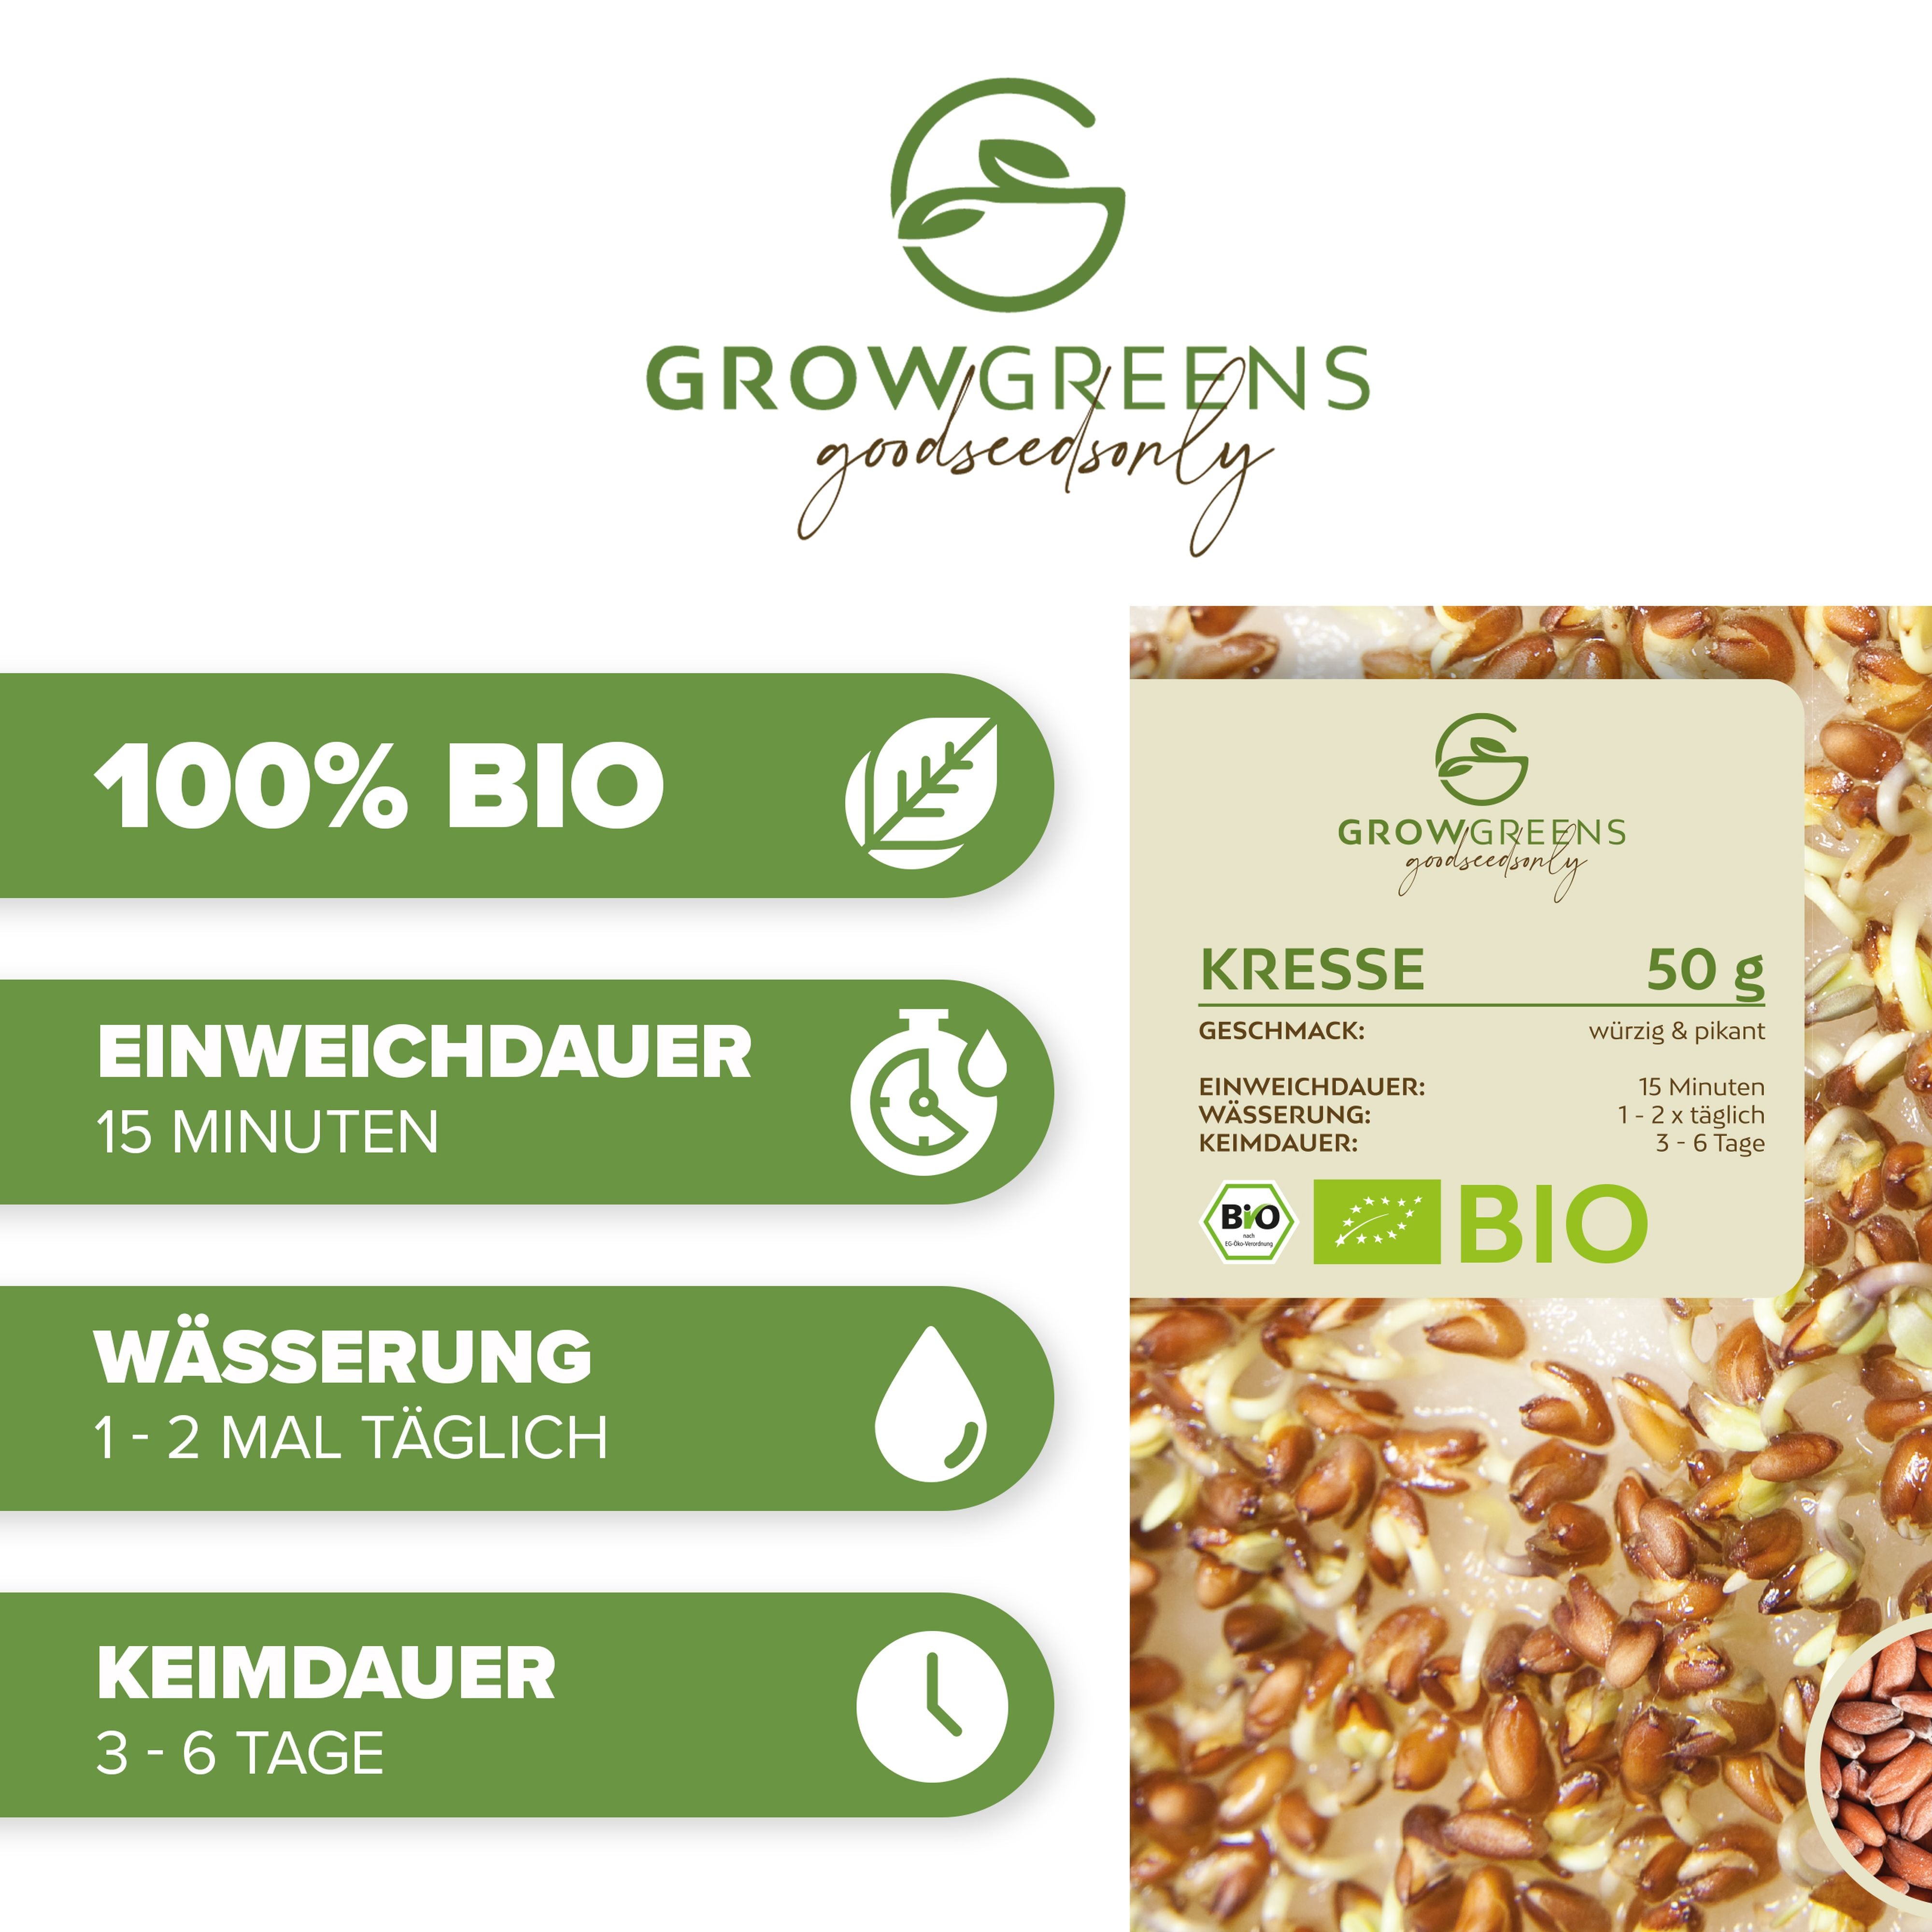 BIO Kresse Sprossen Samen (50g) - Microgreens Saatgut ideal für die Anzucht von knackigen Keimsprossen